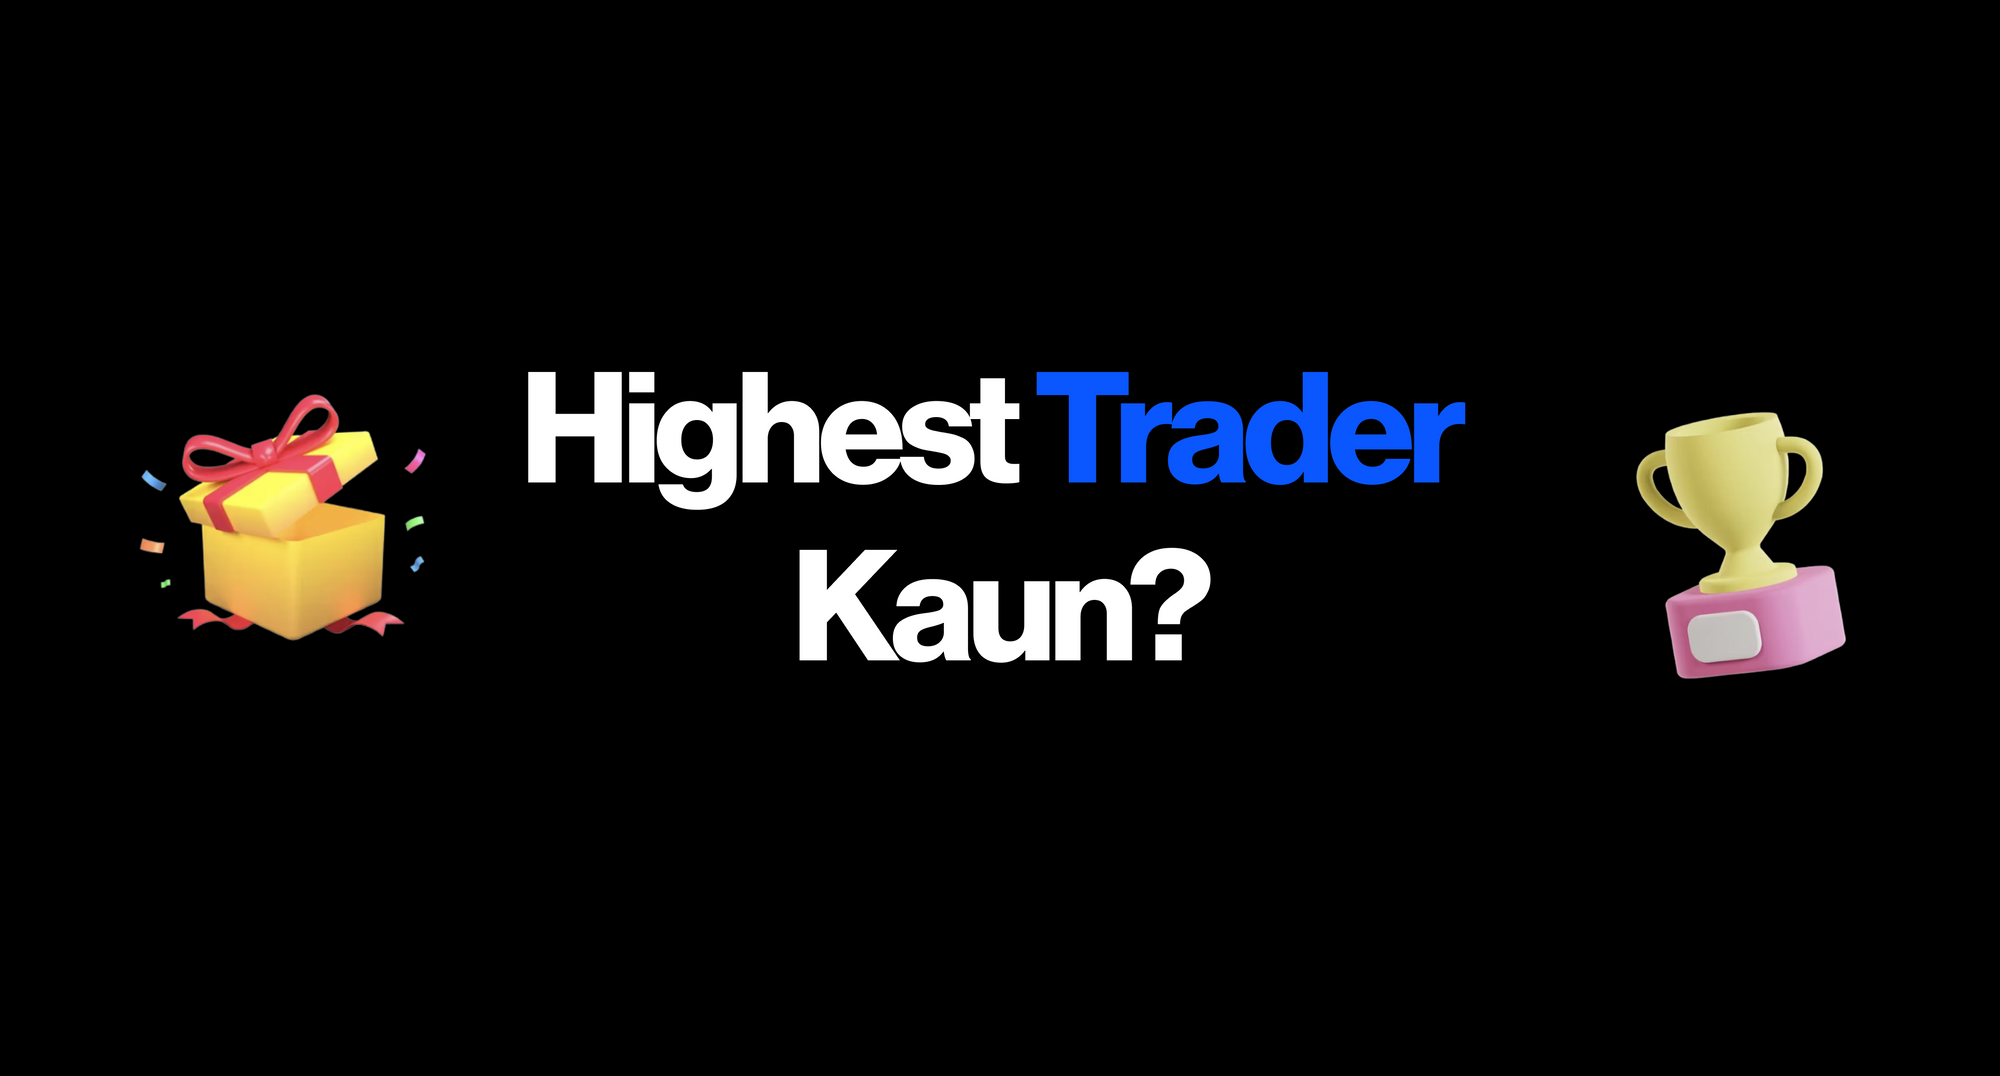 Highest Trader Kaun?